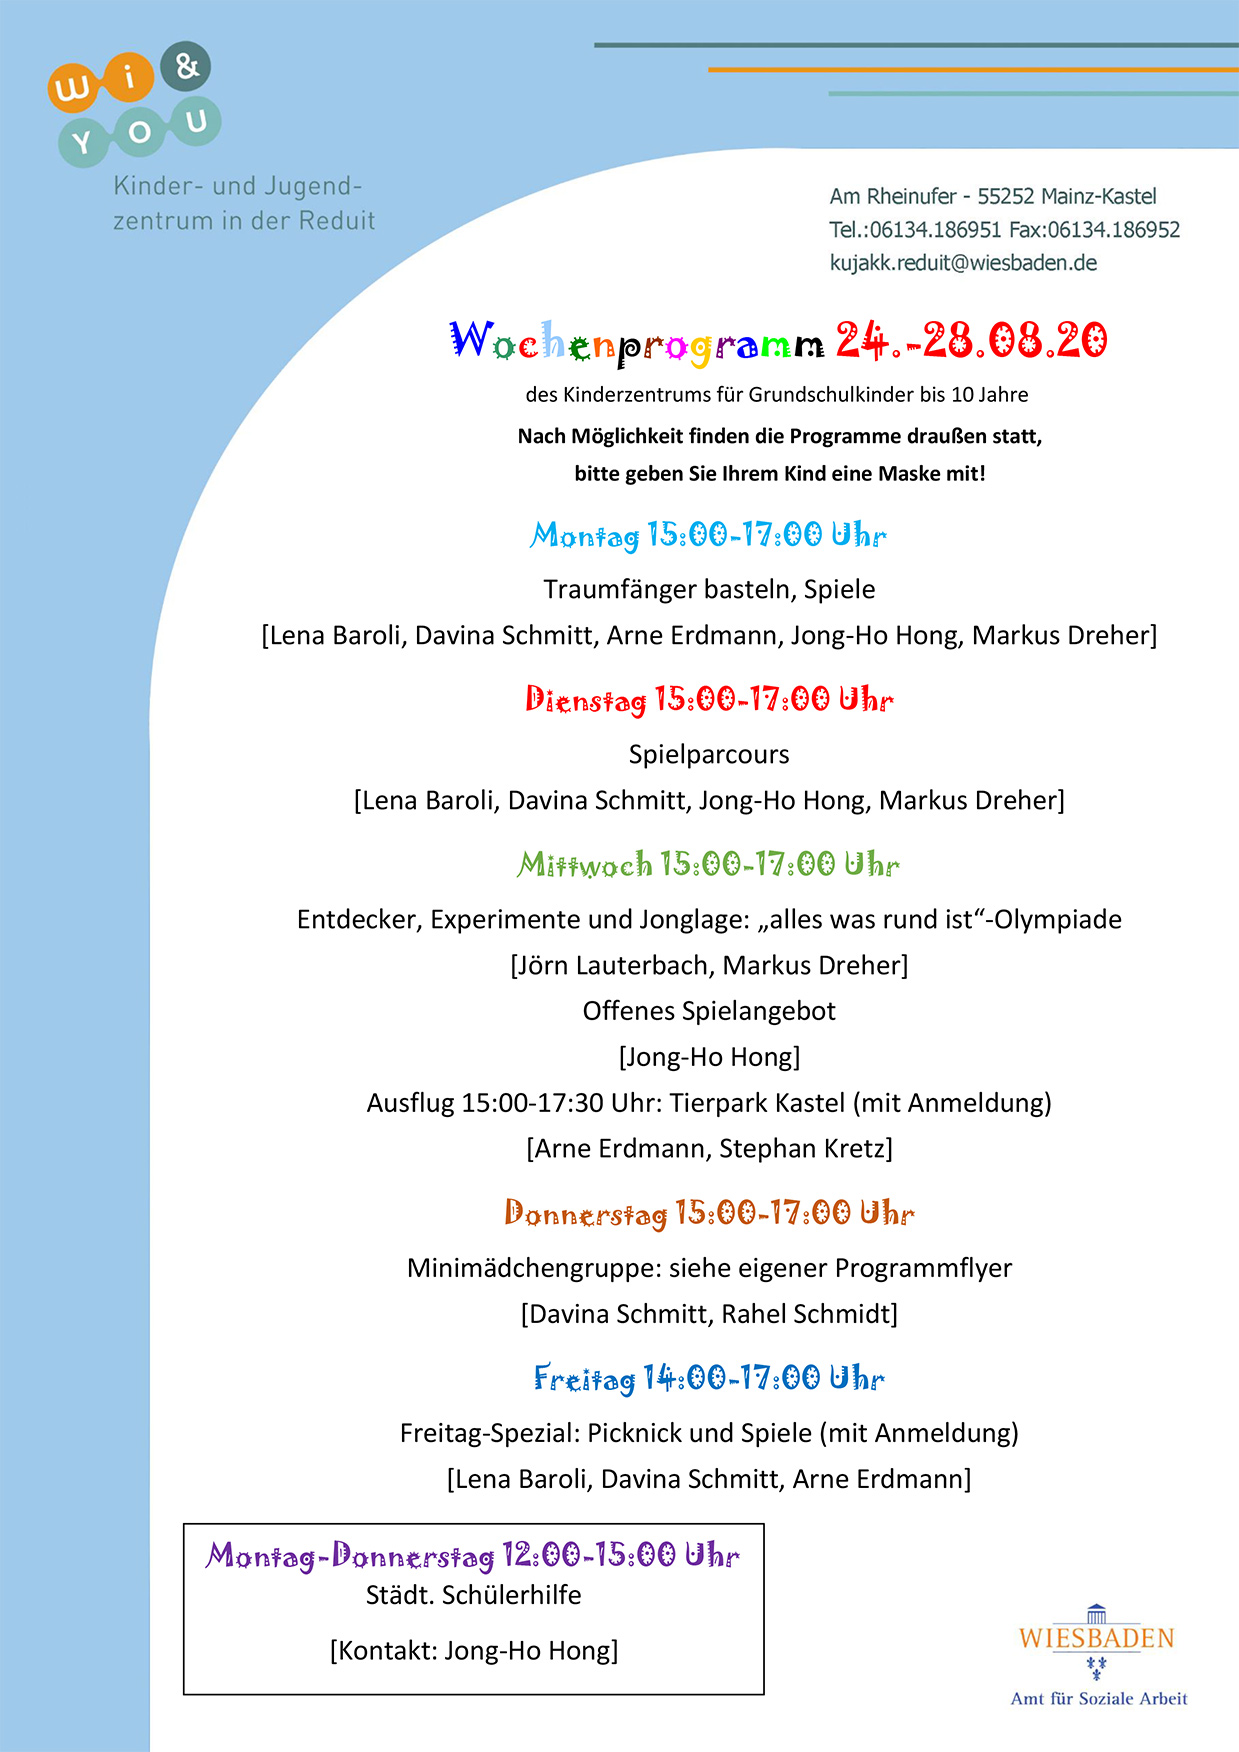 
Wochenprogramm vom 24. bis 28. August 2020 des Kinderzentrums fÃ¼r Grundschulkinder bis 10 Jahre . kujakk . Kinder- und Jugendzentrum in der Reduit . Mainz-Kastel